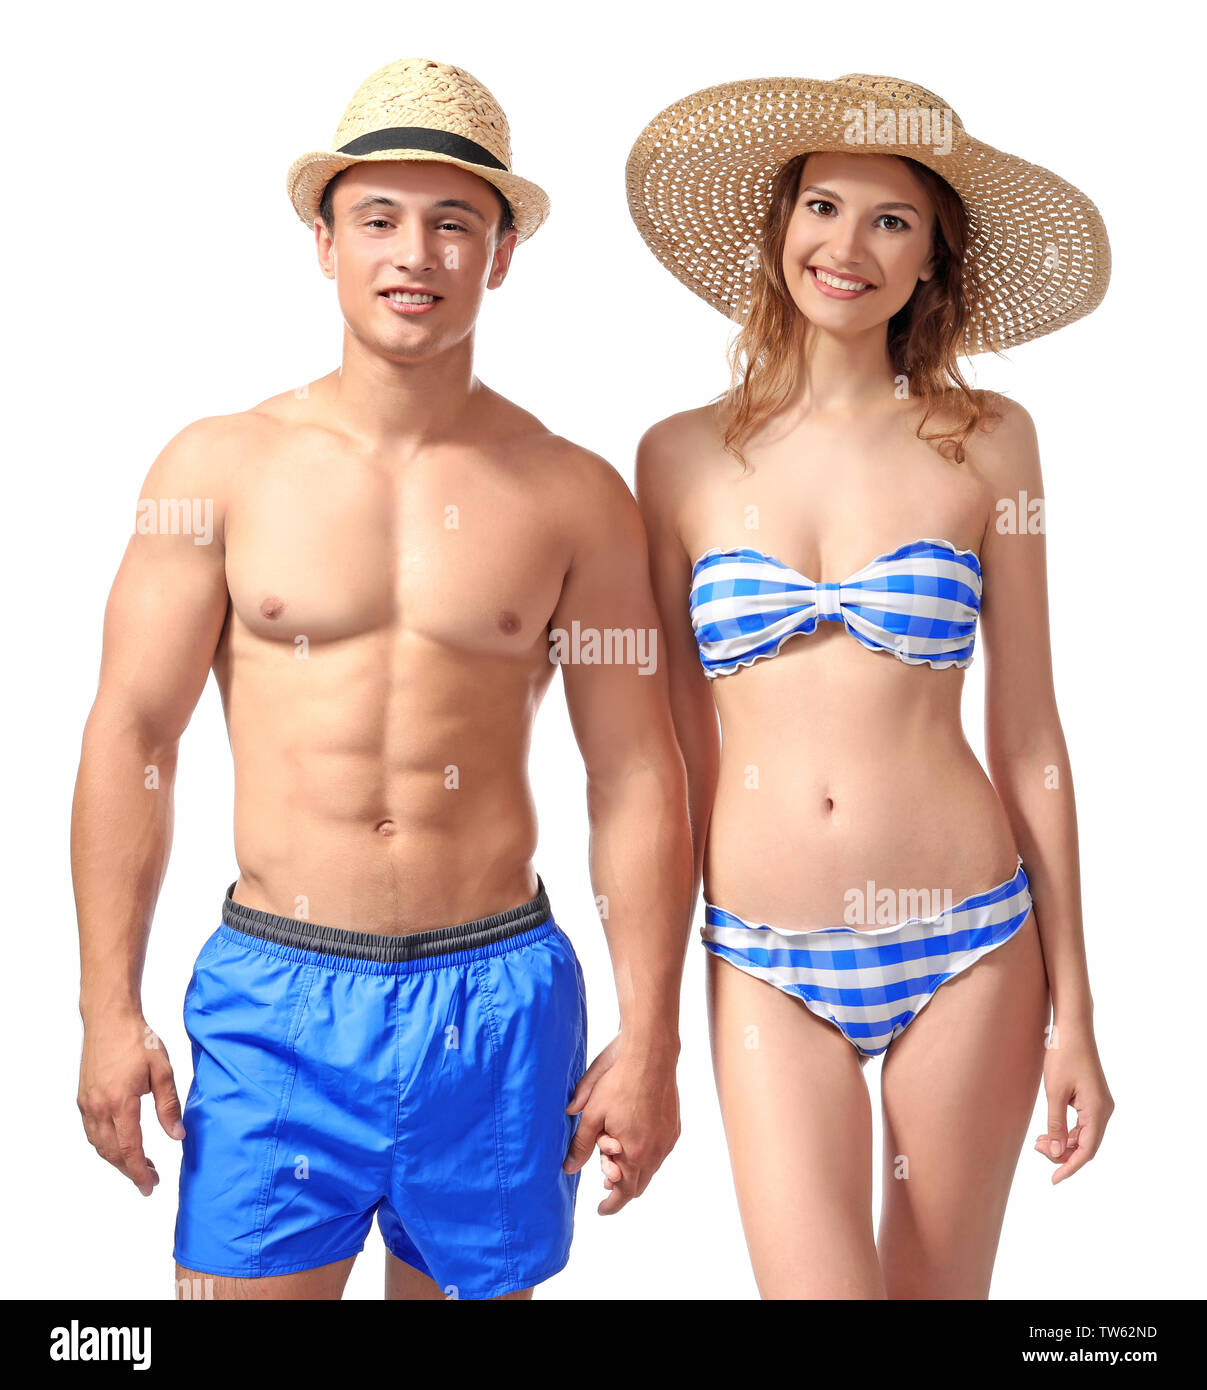 Junges Paar in Badebekleidung auf weißem Hintergrund Stockfoto